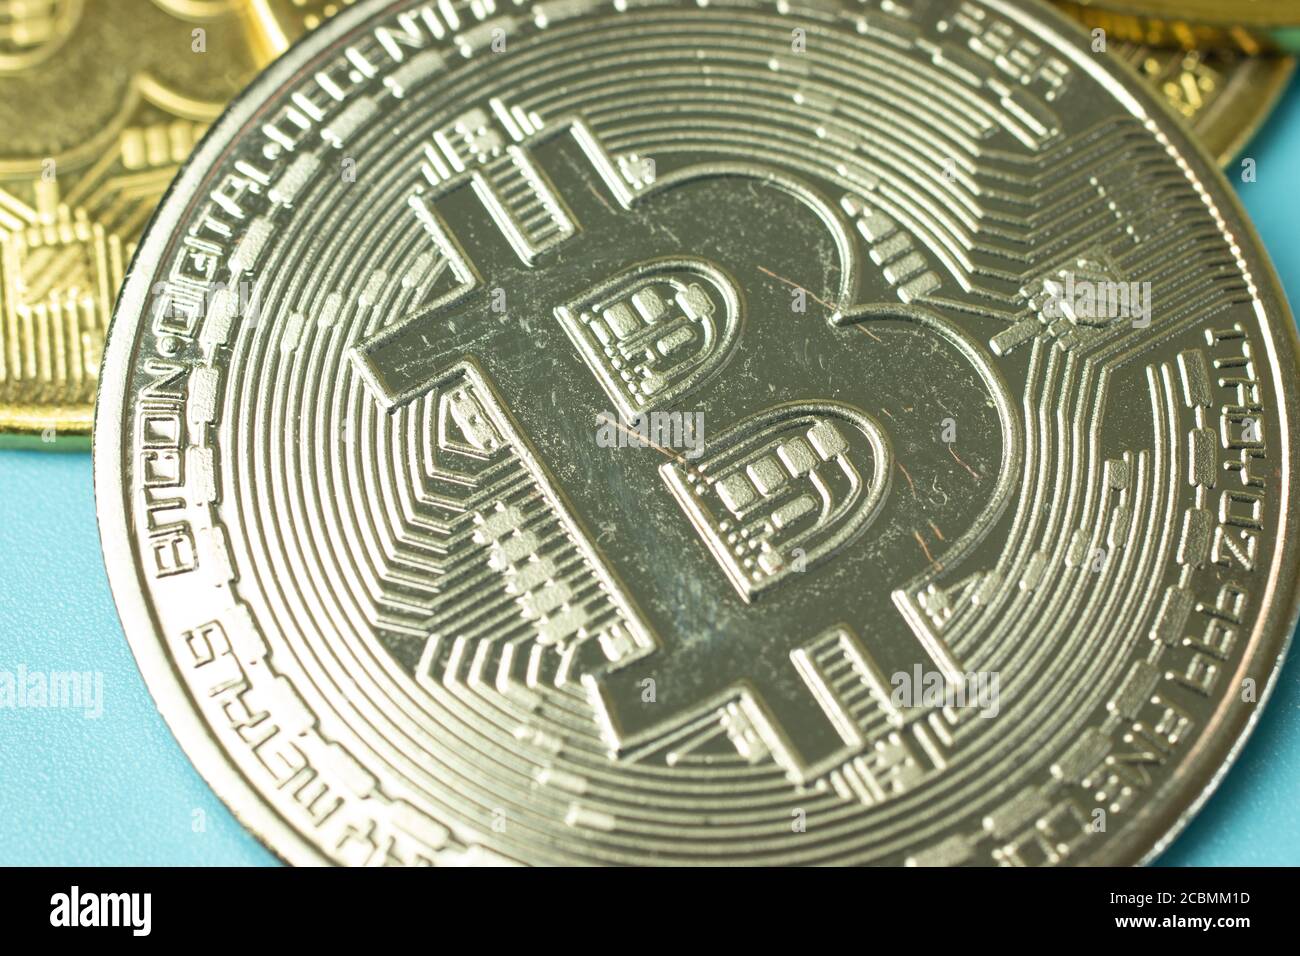 Silver bitcoin coin macro photo Stock Photo